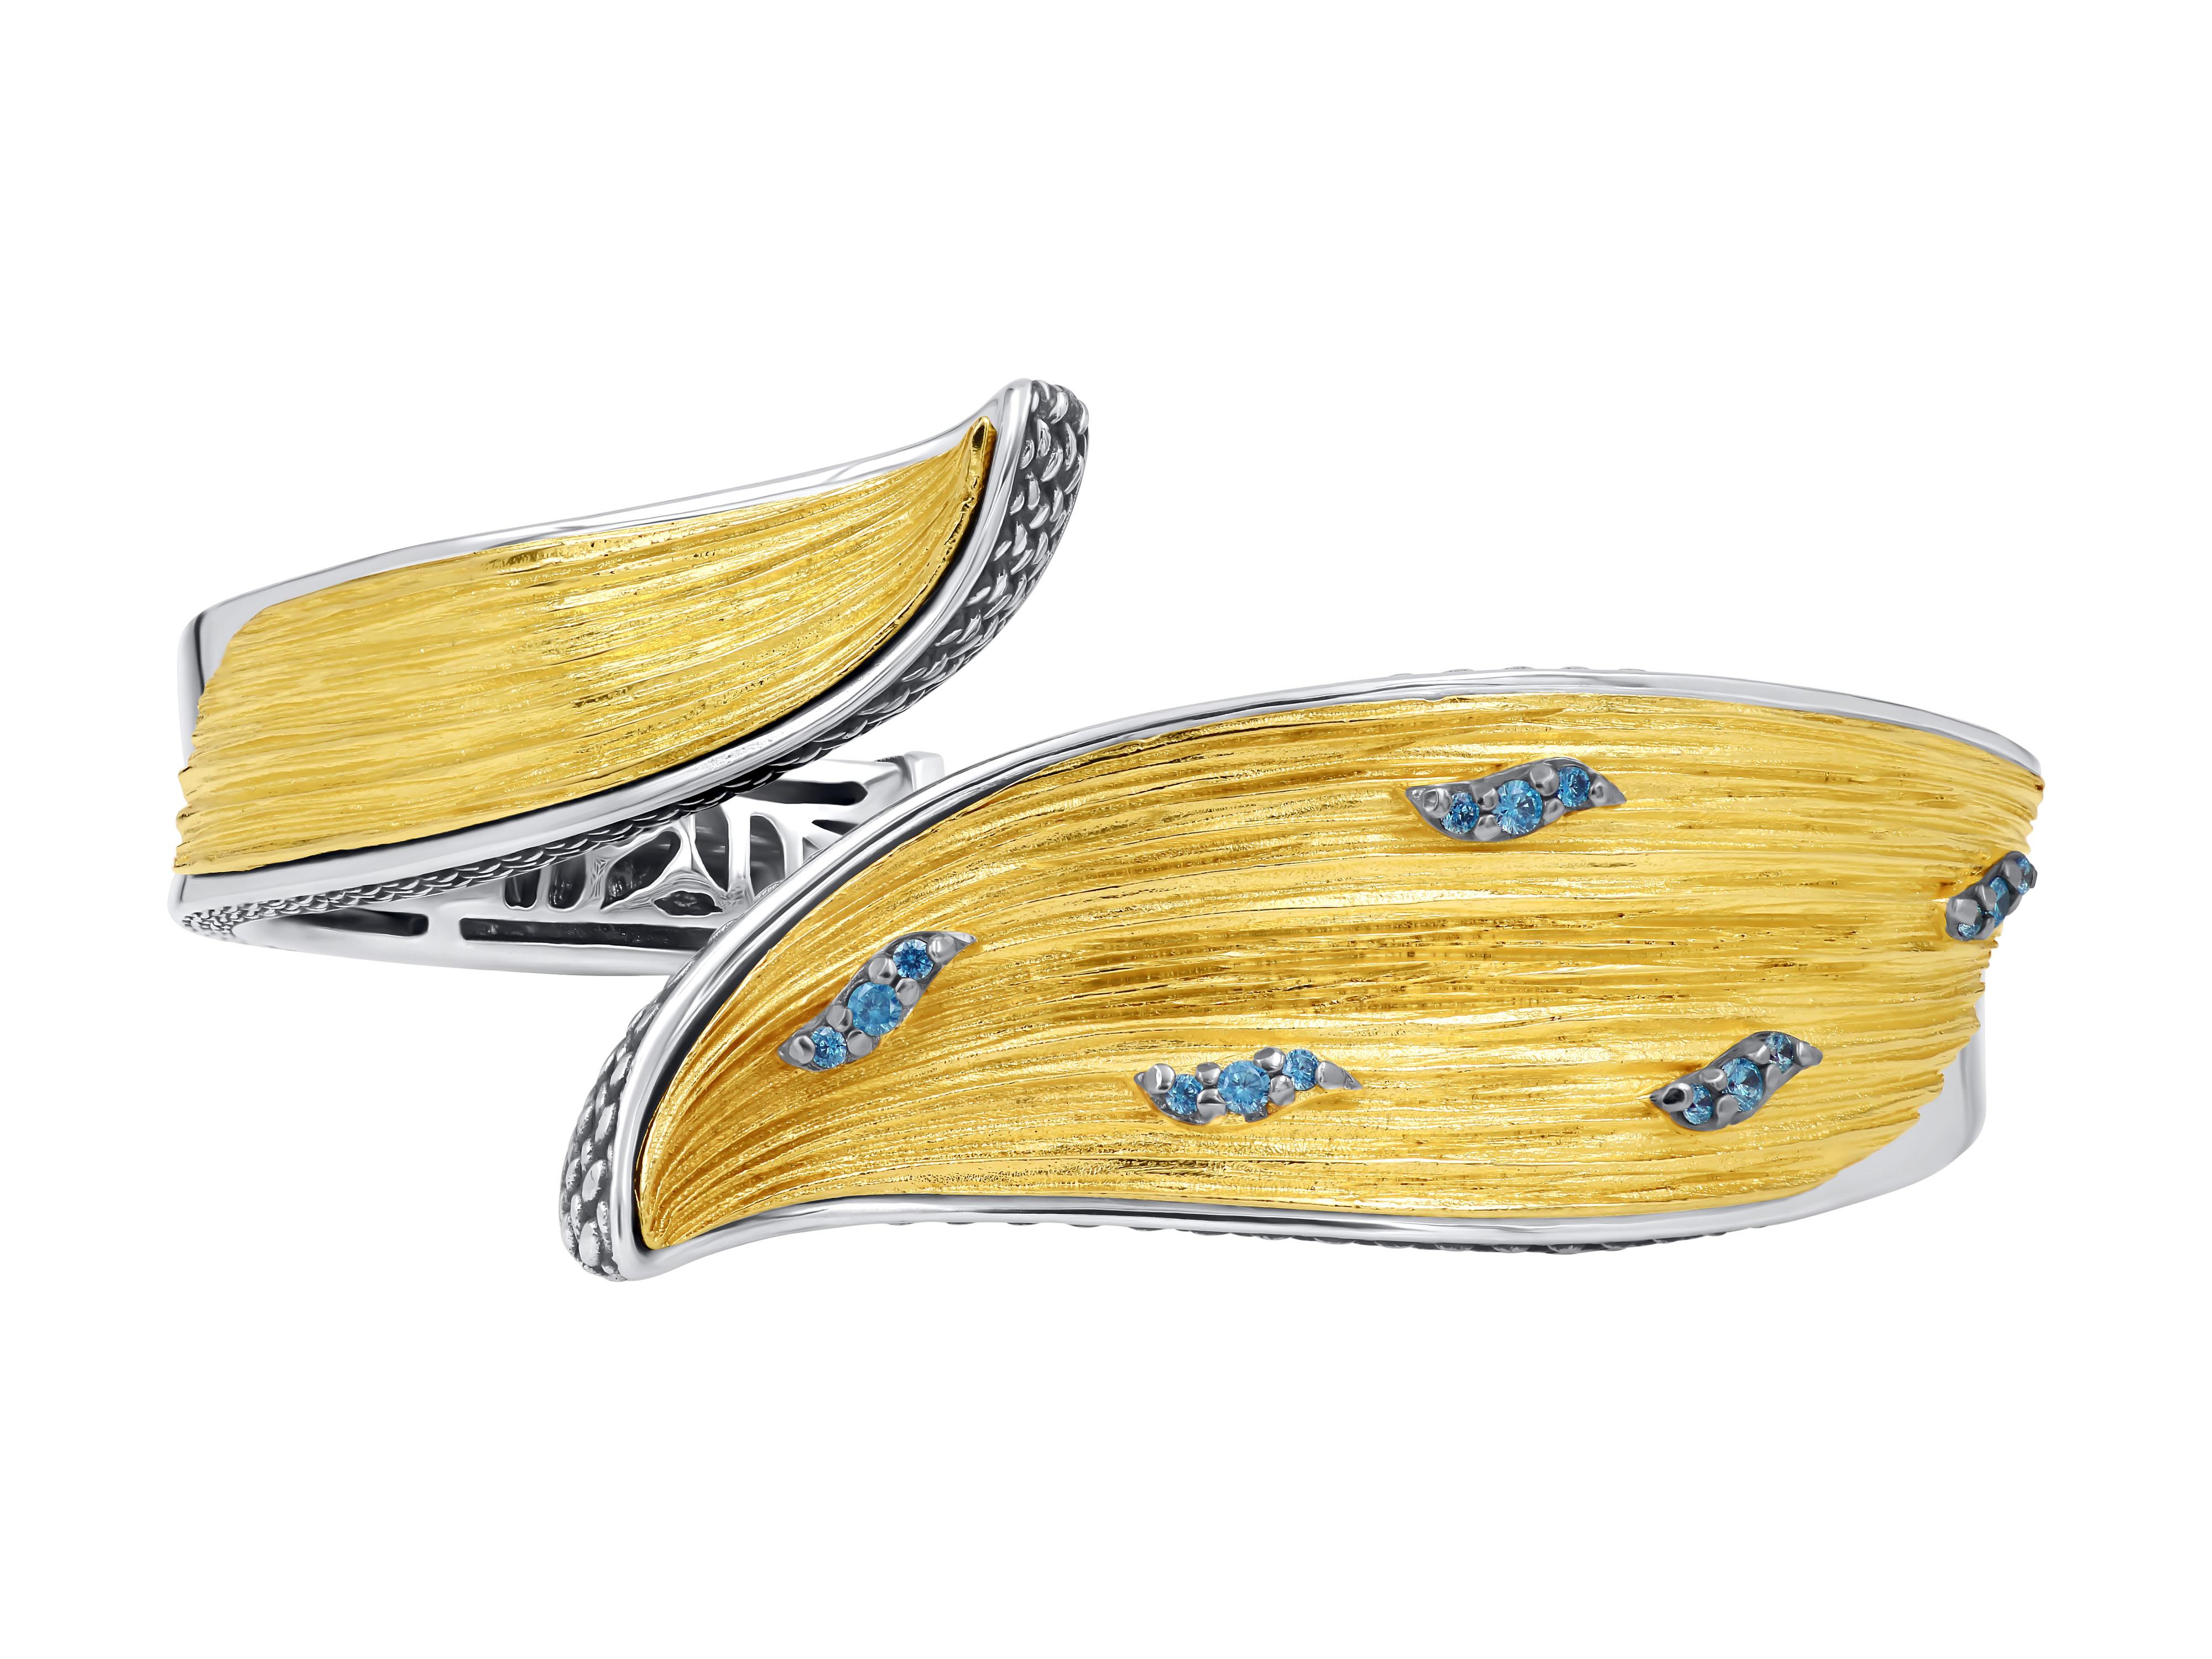 Bracelet en argent bicolore avec surface texturée plaquée or et ornée de pierres de topaze bleue. Ce superbe bijou allie l'élégance de l'argent à la beauté de la topaze bleue pour créer un design unique et accrocheur.
La surface texturée ajoute de